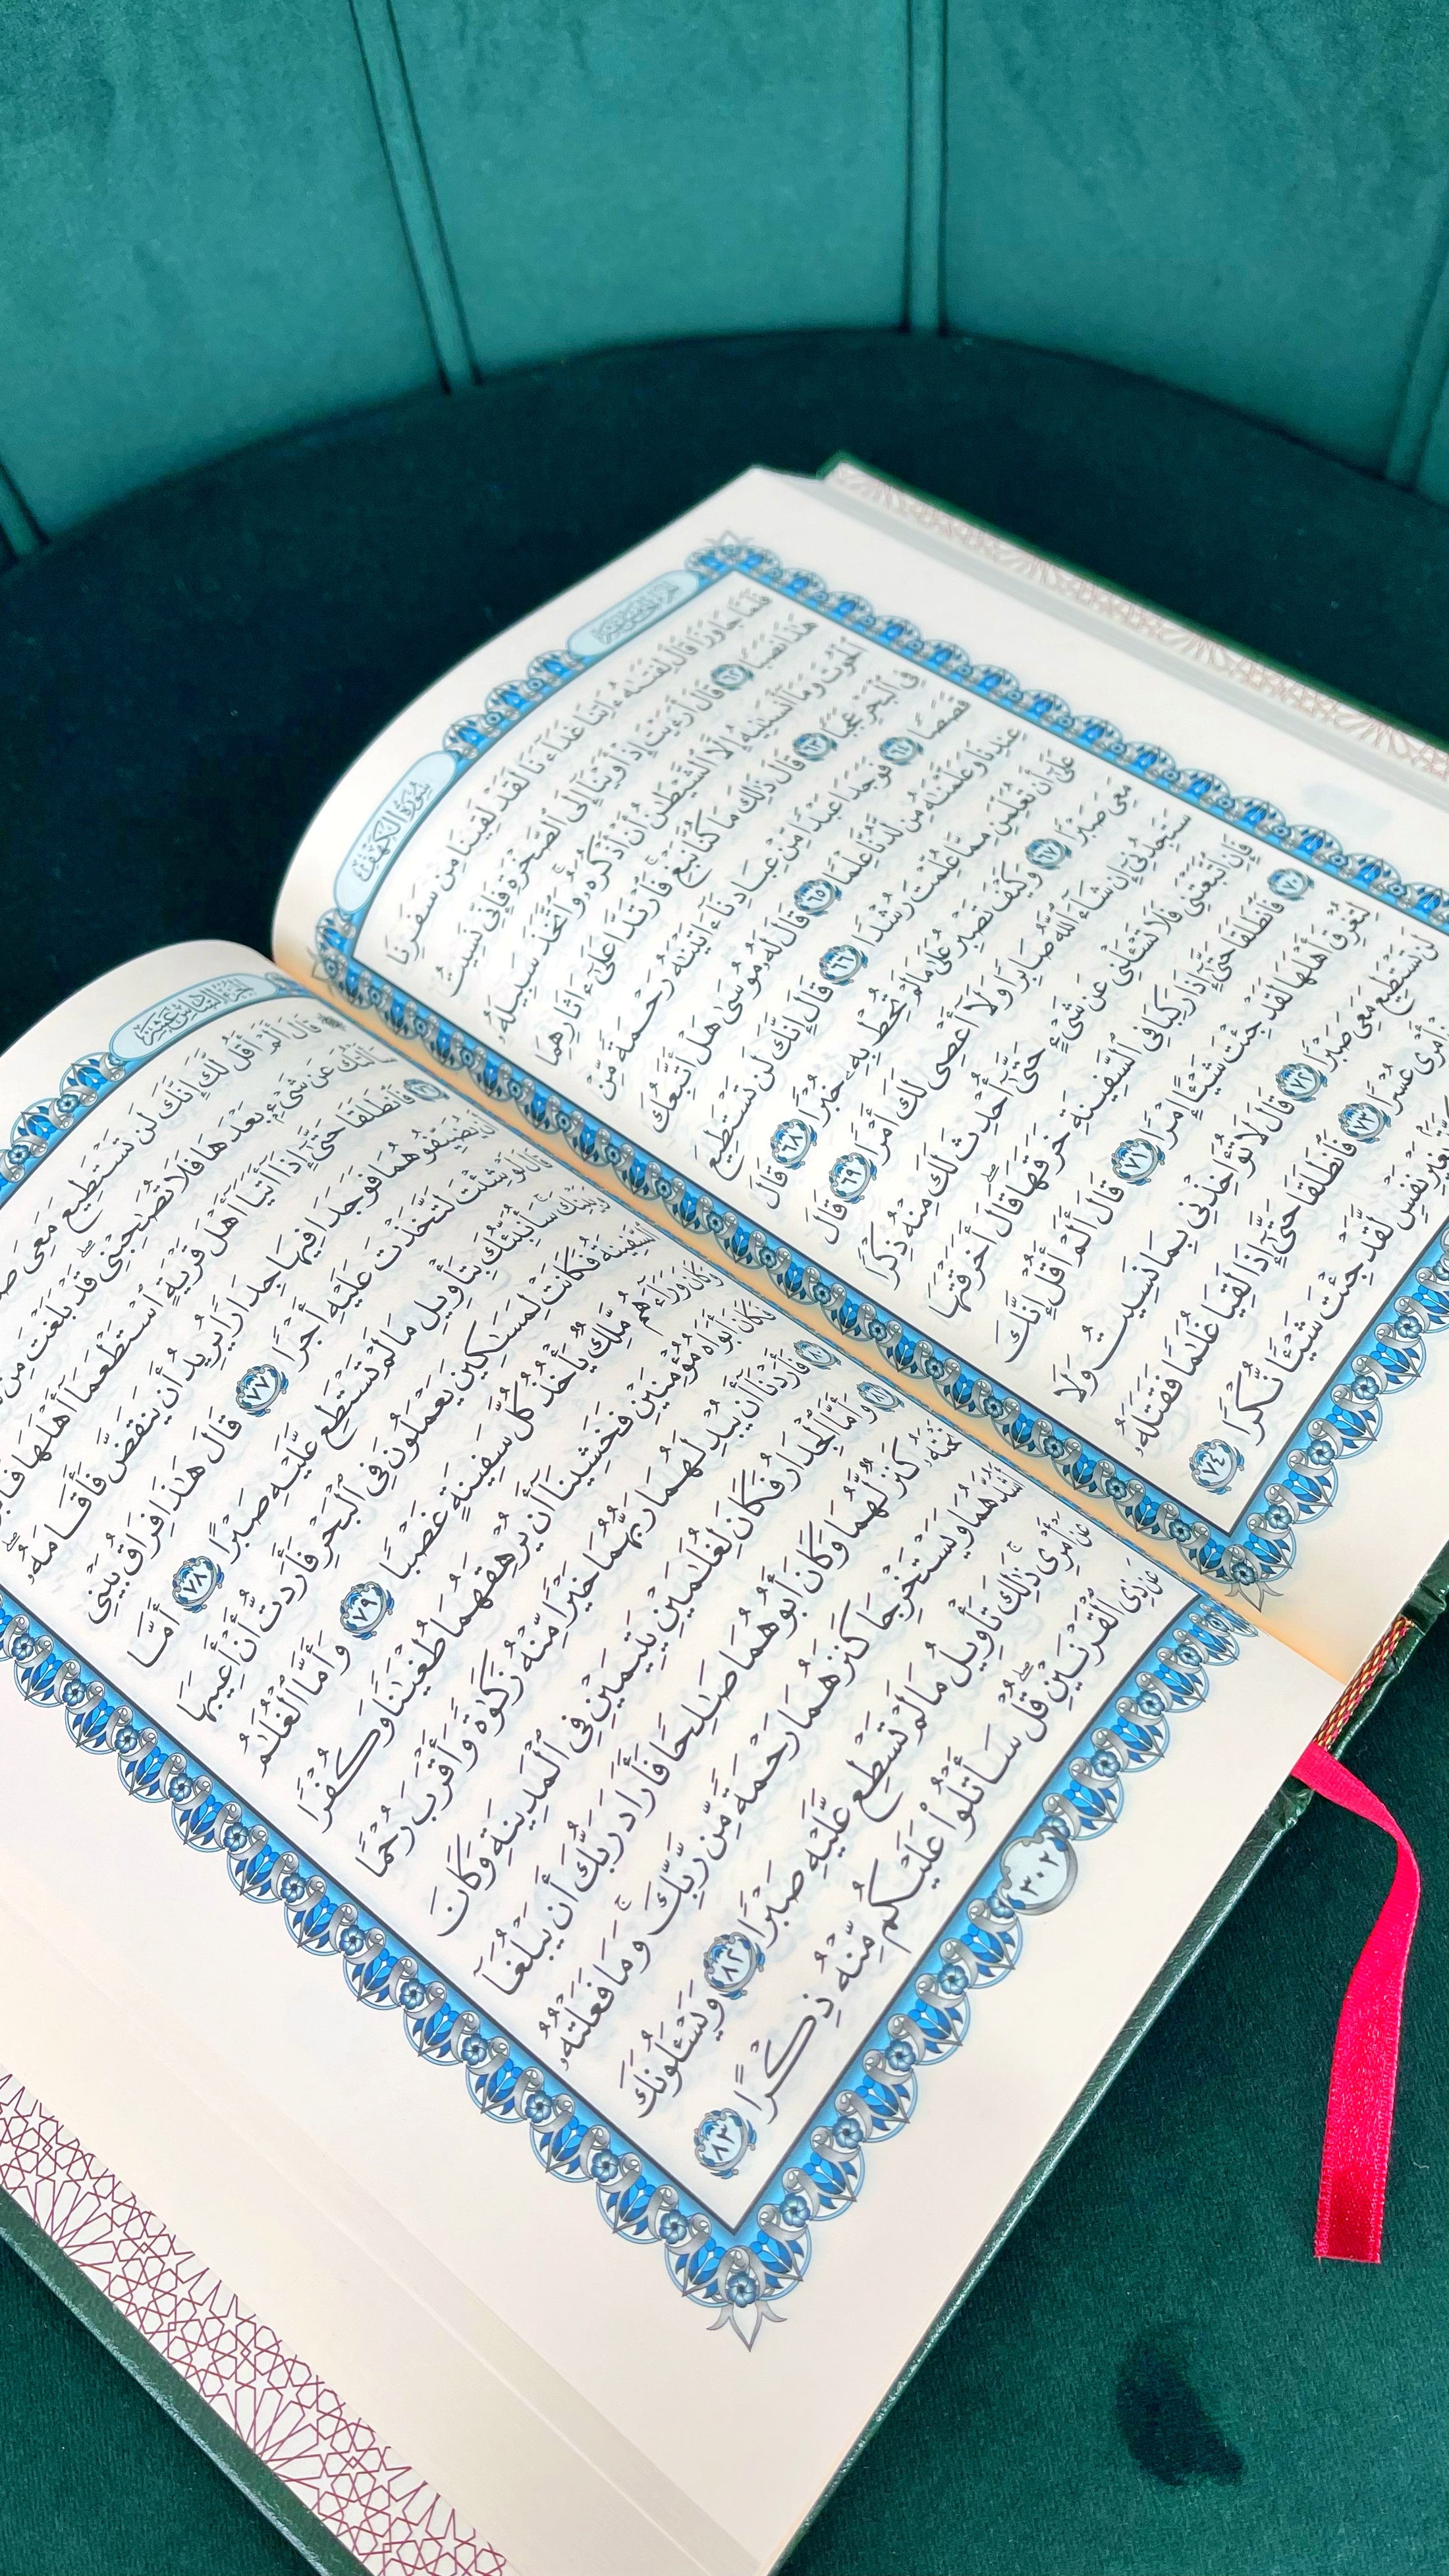 Corano arabo hafs